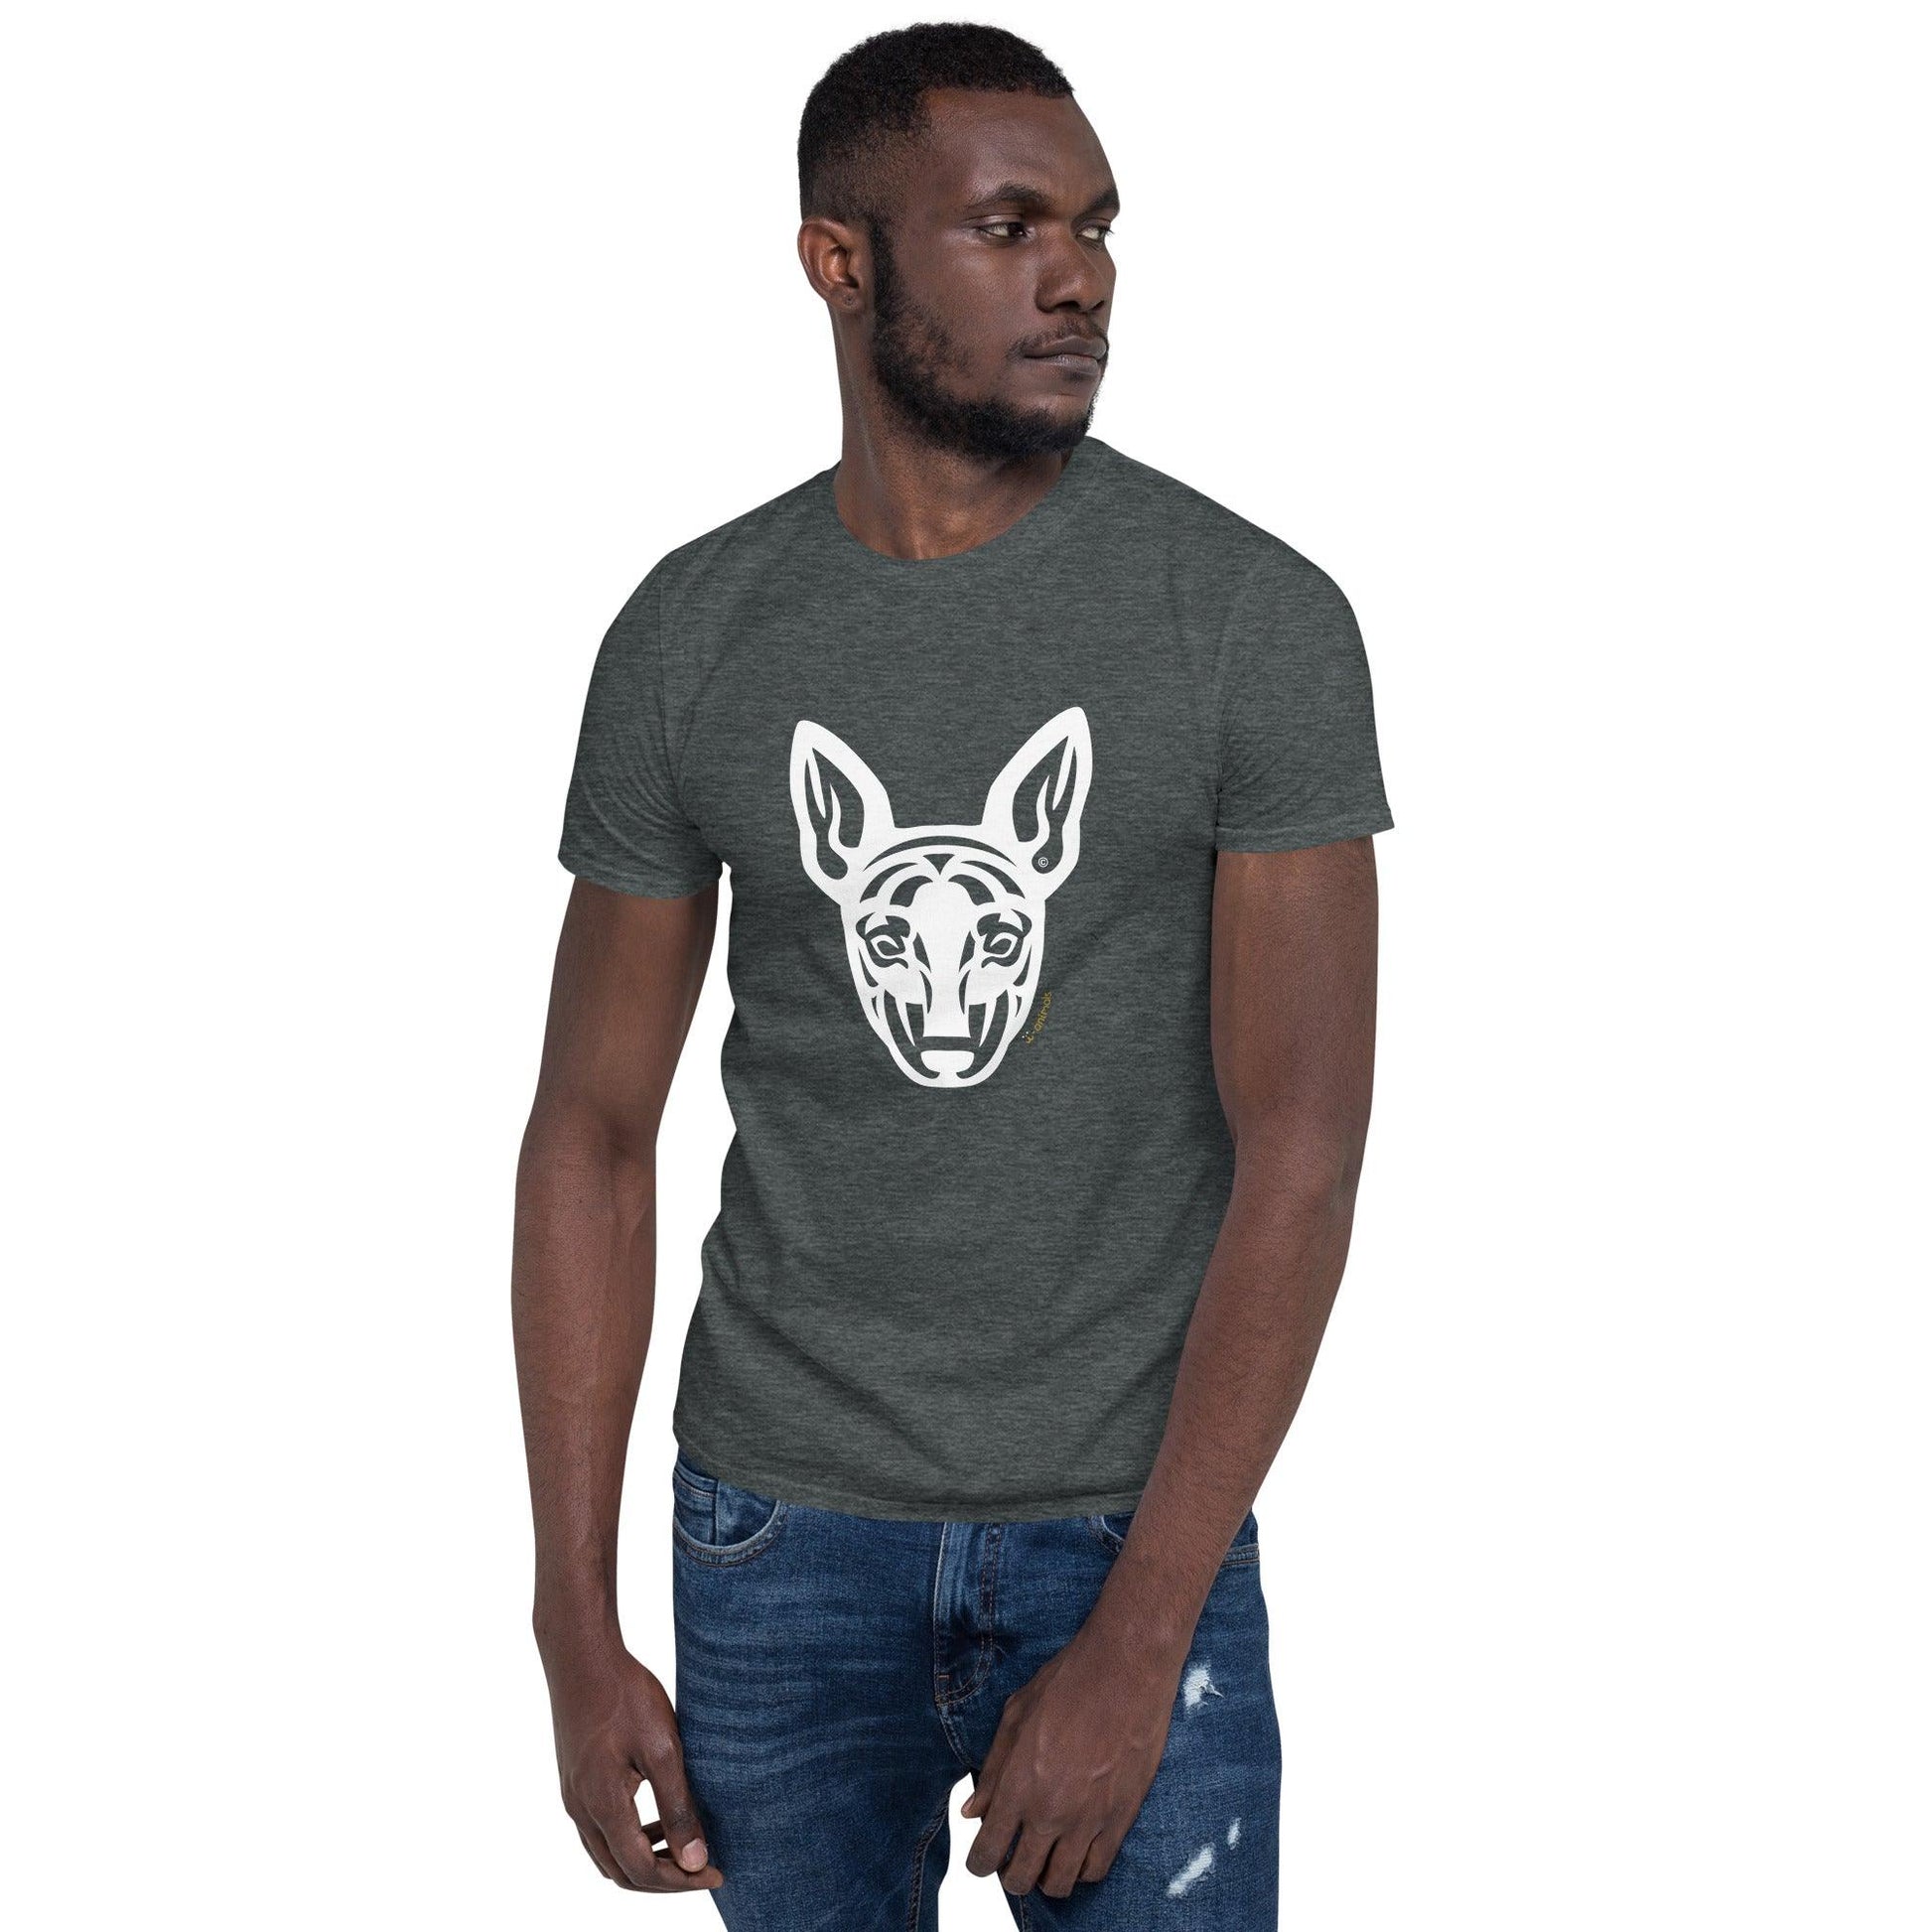 Camiseta unissex de manga curta - Pinscher - Tribal i-animals